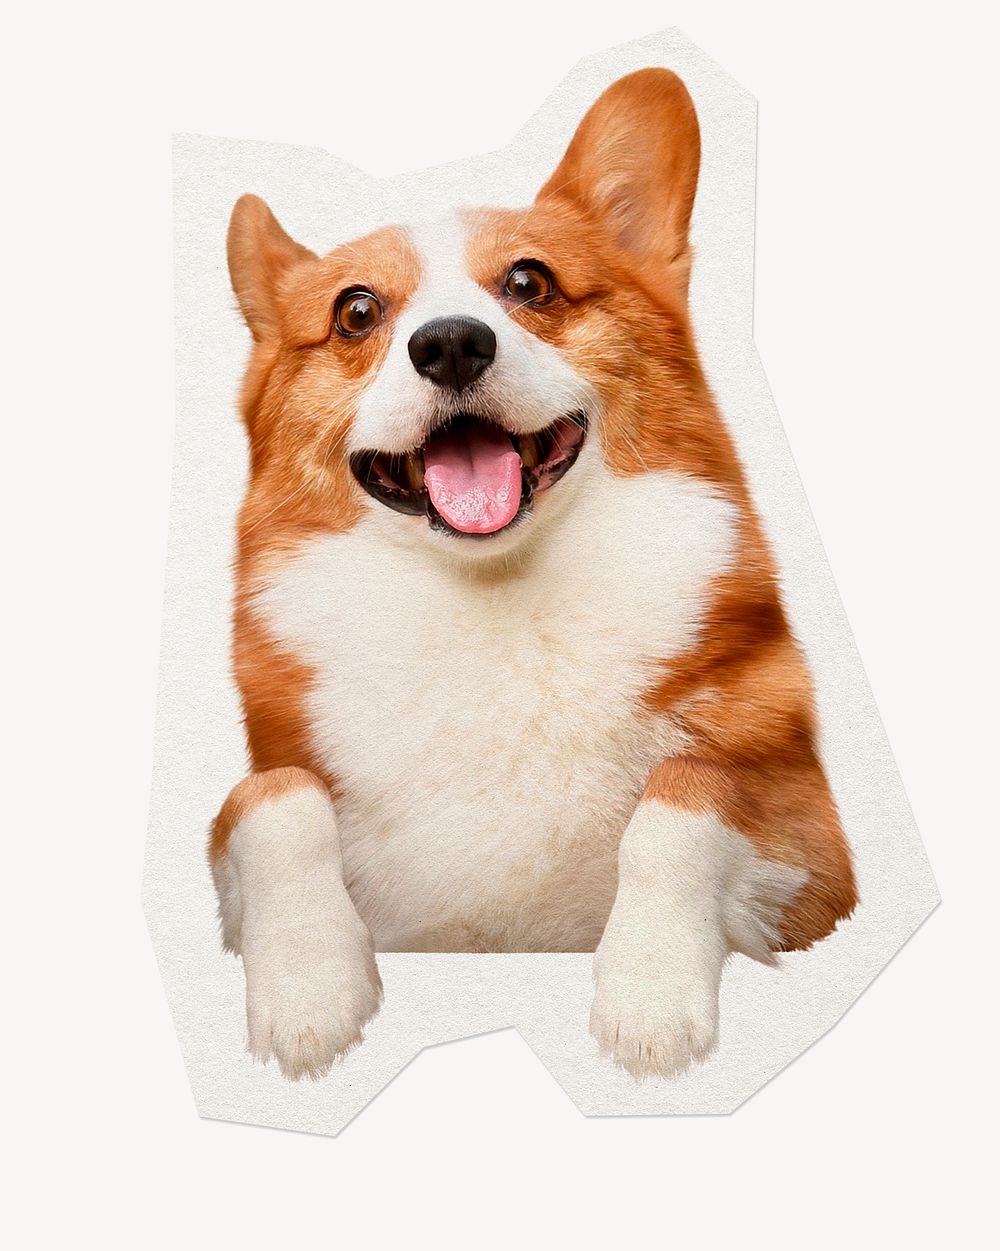 Cute Corgi dog clipart sticker, paper craft collage element